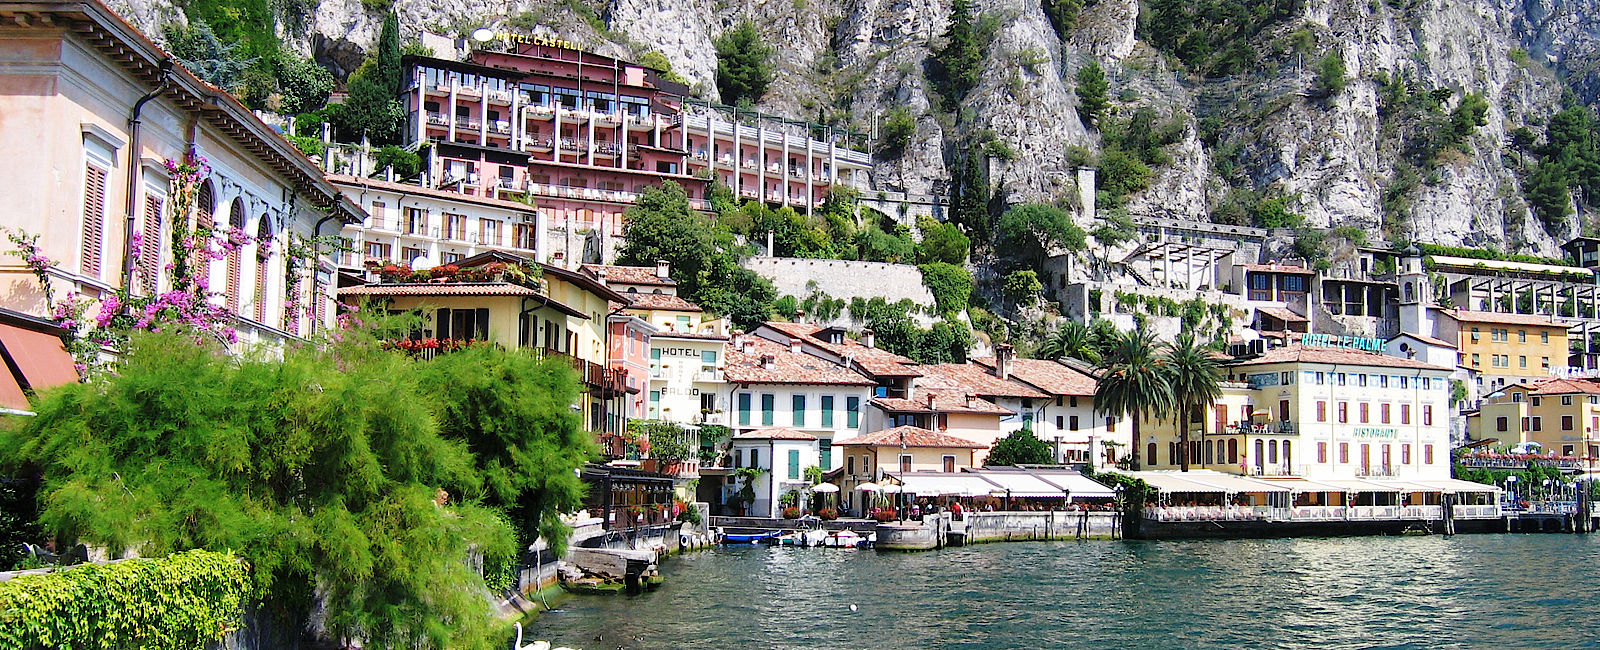 OBERITALIENISCHE SEEN
 Reise Oberitalienische Seen – Seen-Sucht nach Italien 